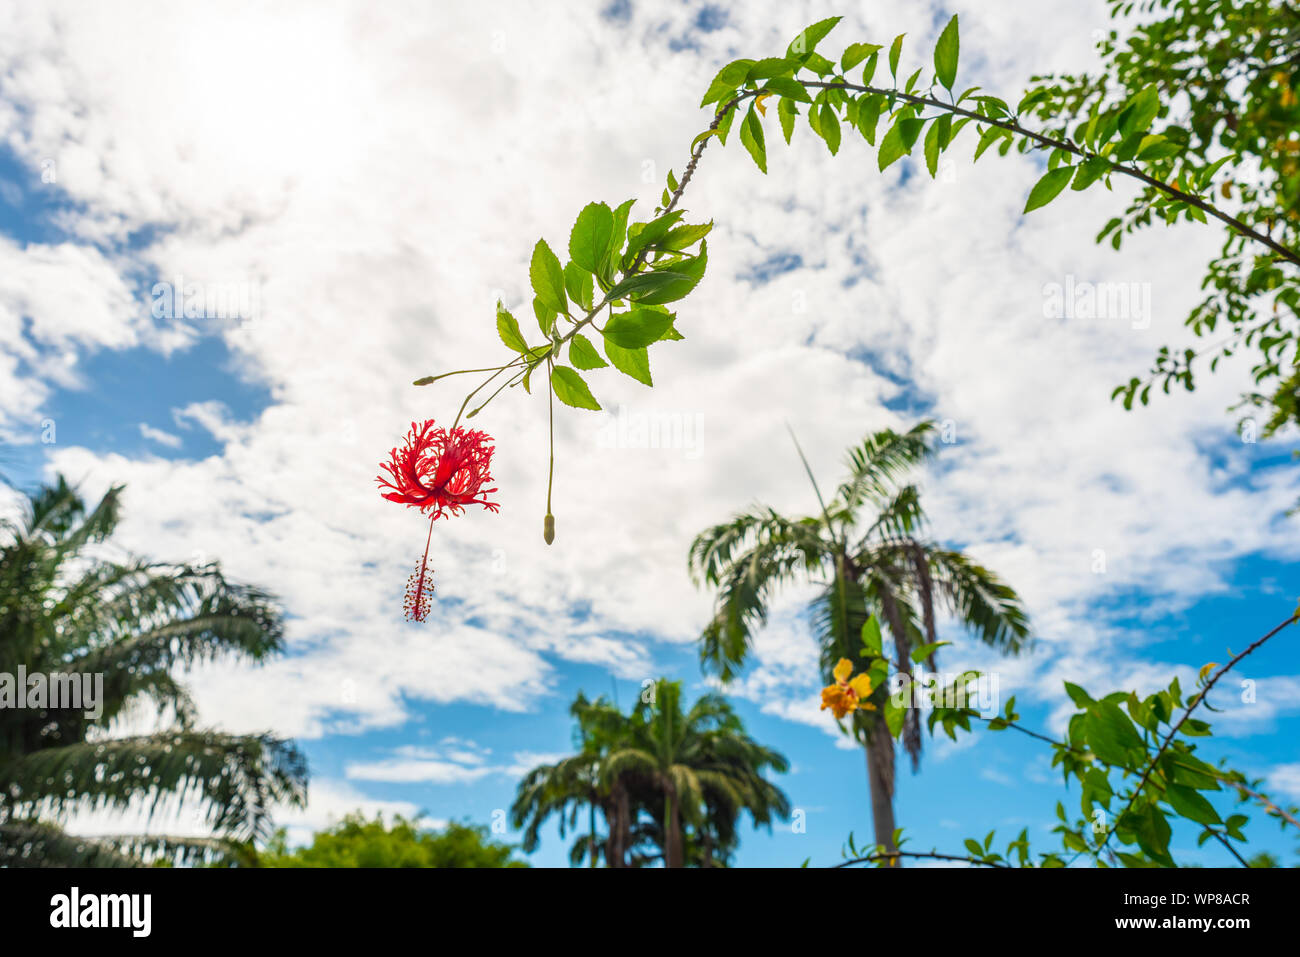 Hibiscus rote Blume auf einem Ast gegen den blauen Himmel, mit Palmen im Hintergrund. König Rama 9 Park in Bangkok. Stockfoto